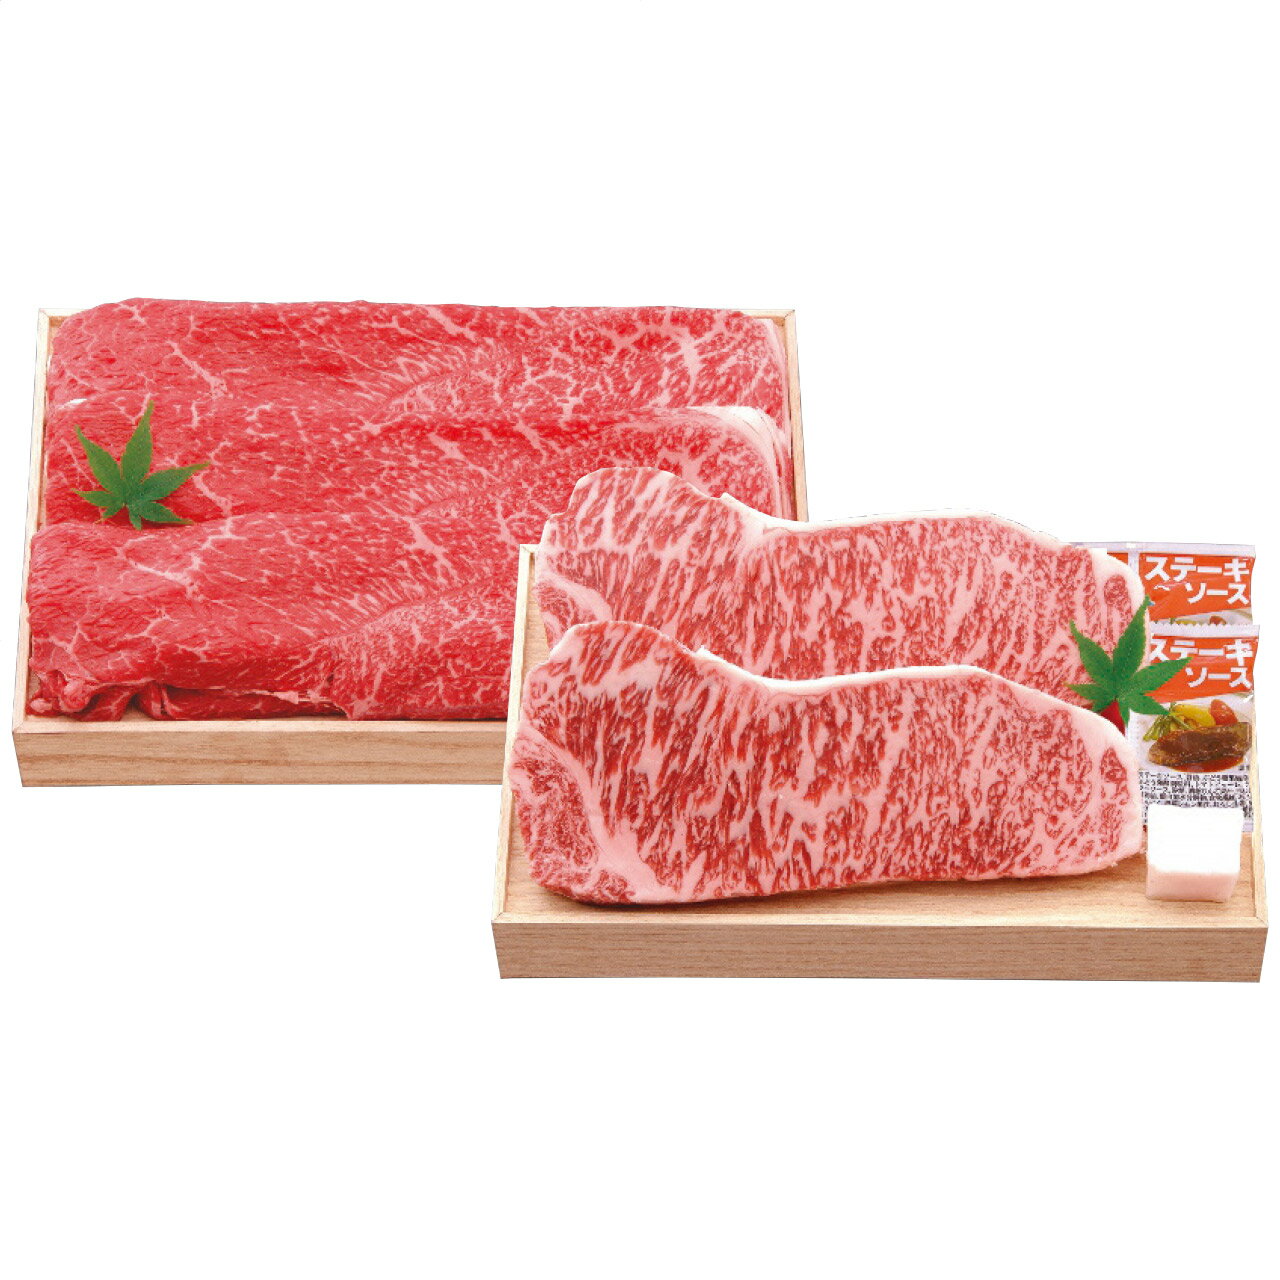 近江牛 ステーキ＆すき焼き 千成亭 日本製 [APD2269-024 産直]| 肉食品 精肉・肉加工品 肉類